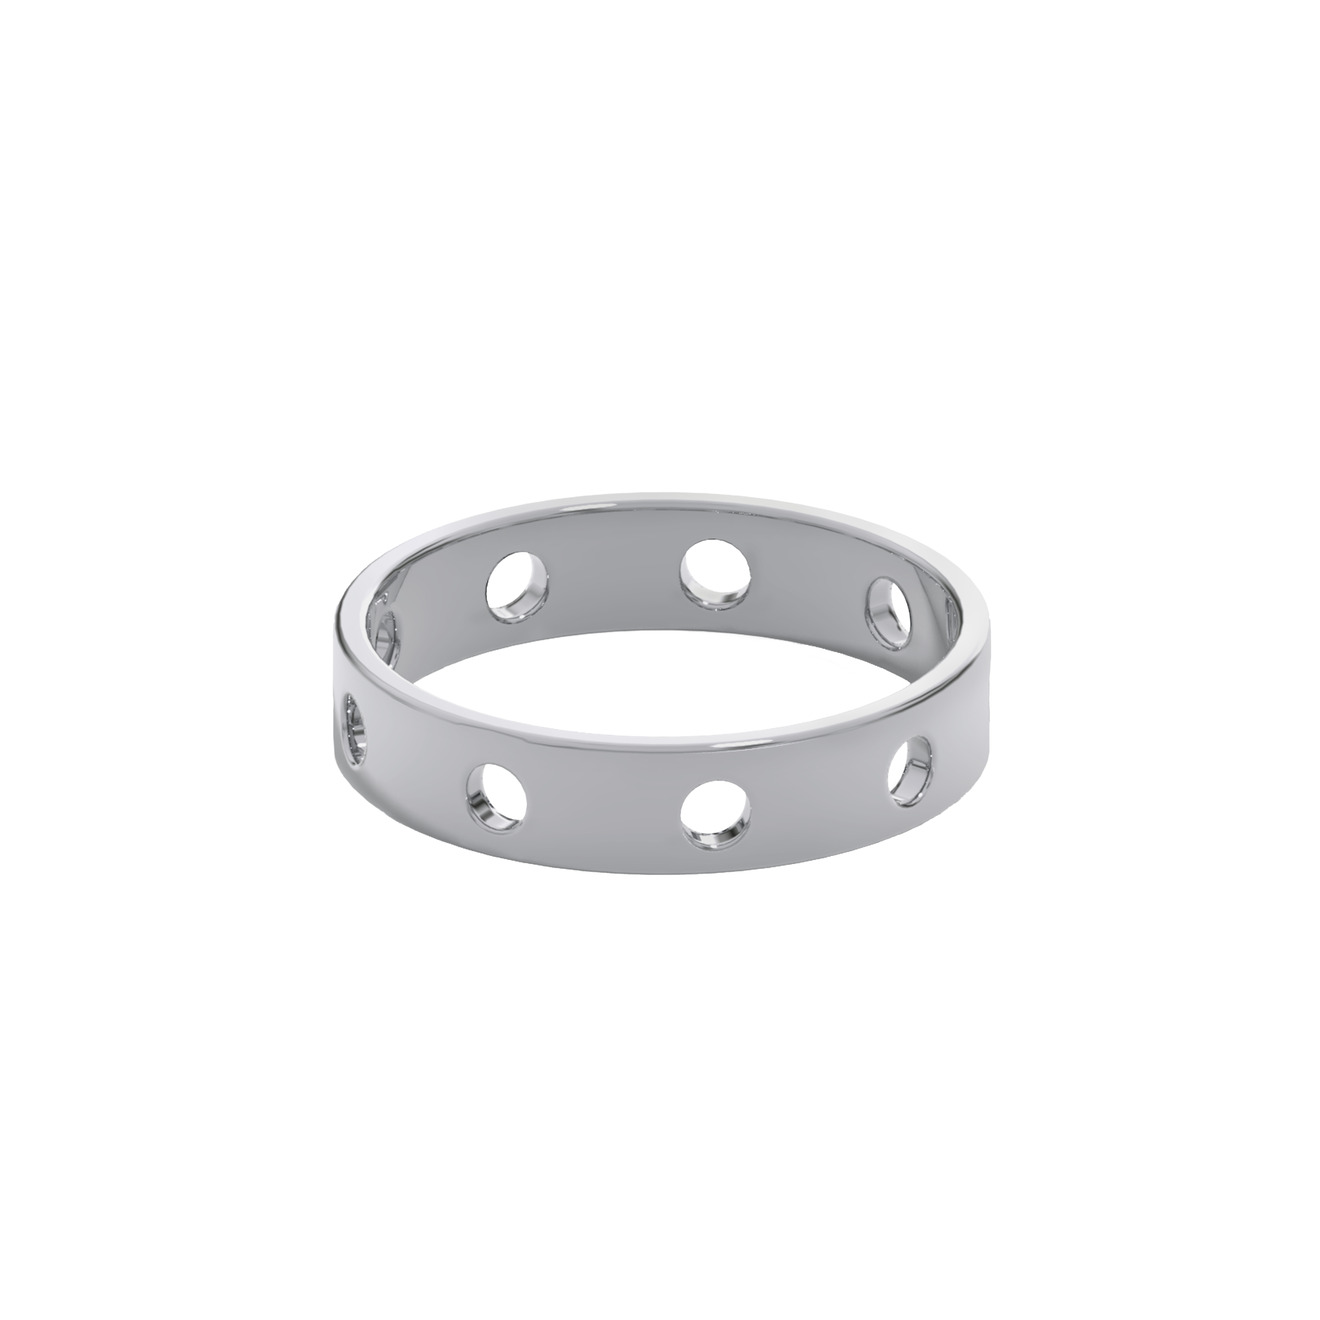 Prosto Jewelry Кольцо из серебра с окошками prosto jewelry моносерьга из серебра с большим позолоченным шаром